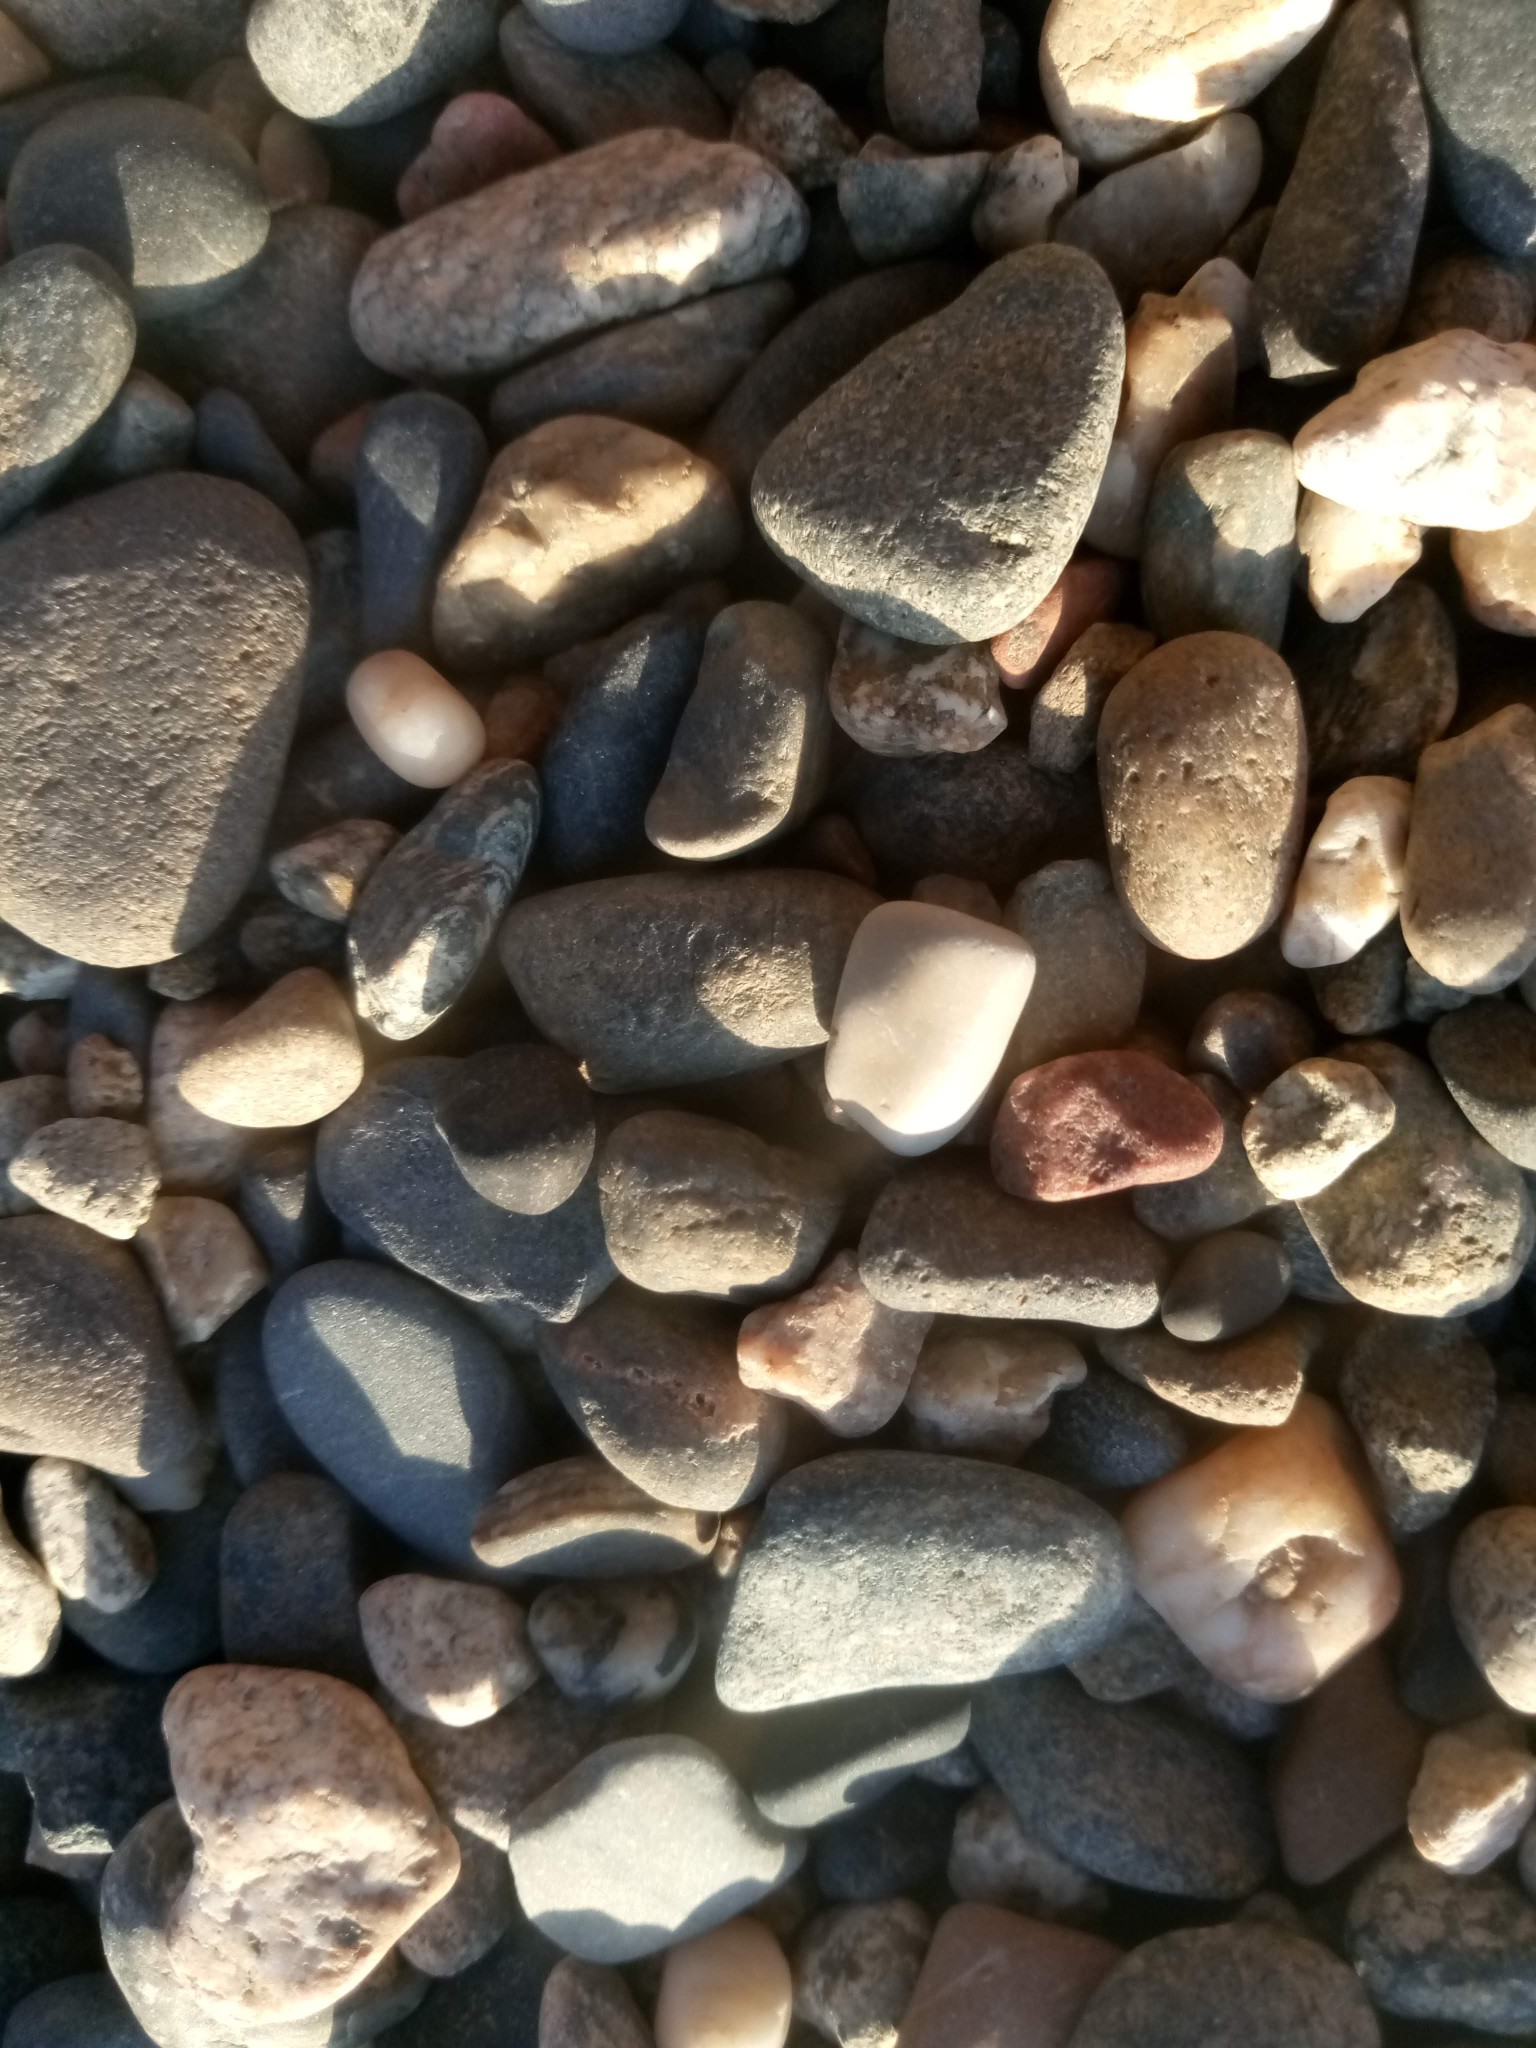  Stones texture - sea stones photo